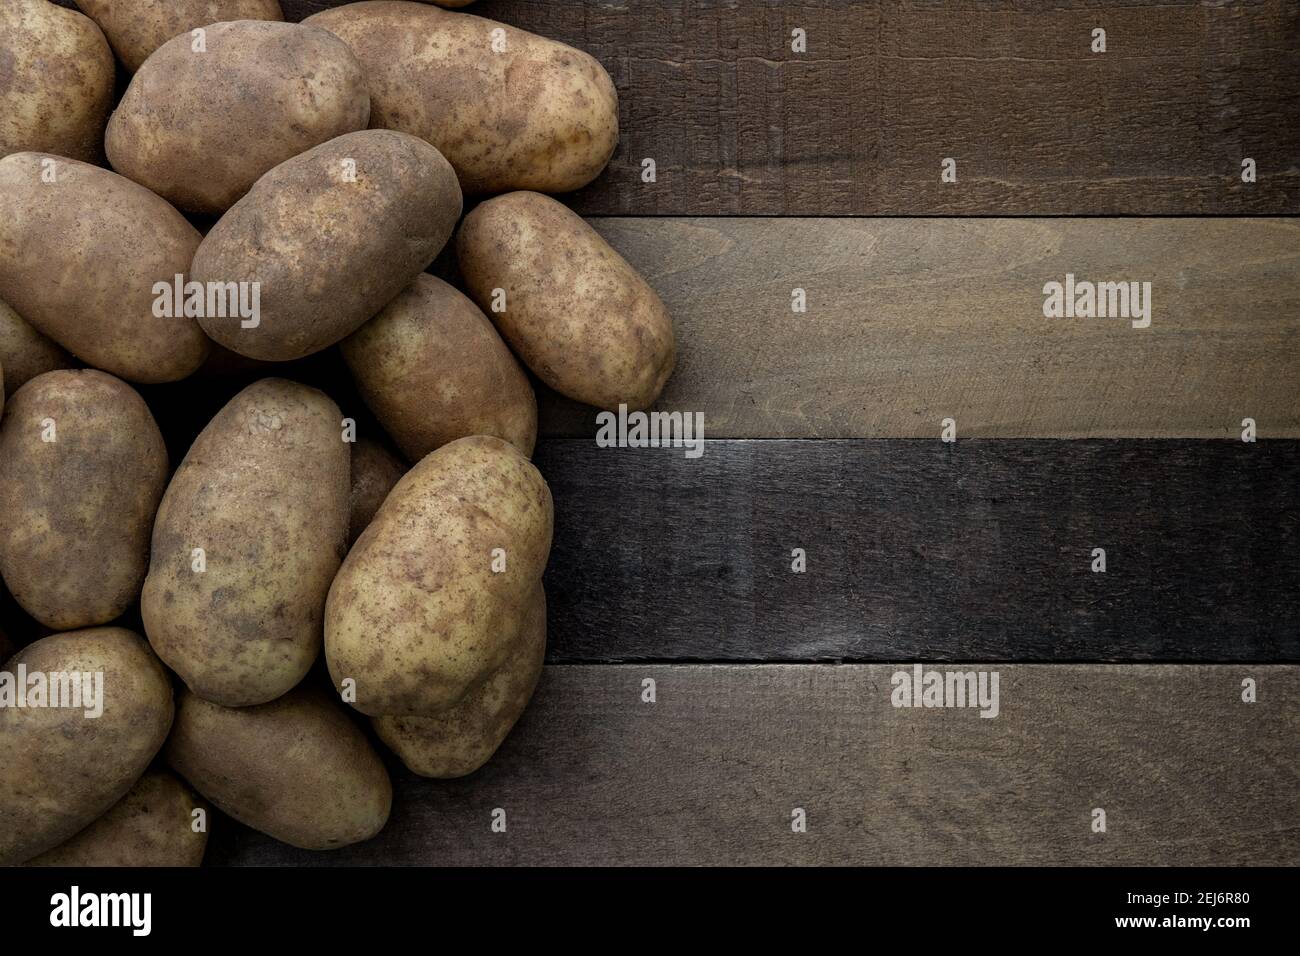 Photographie d'un tas de pommes de terre russet sur un rustique table en bois Banque D'Images